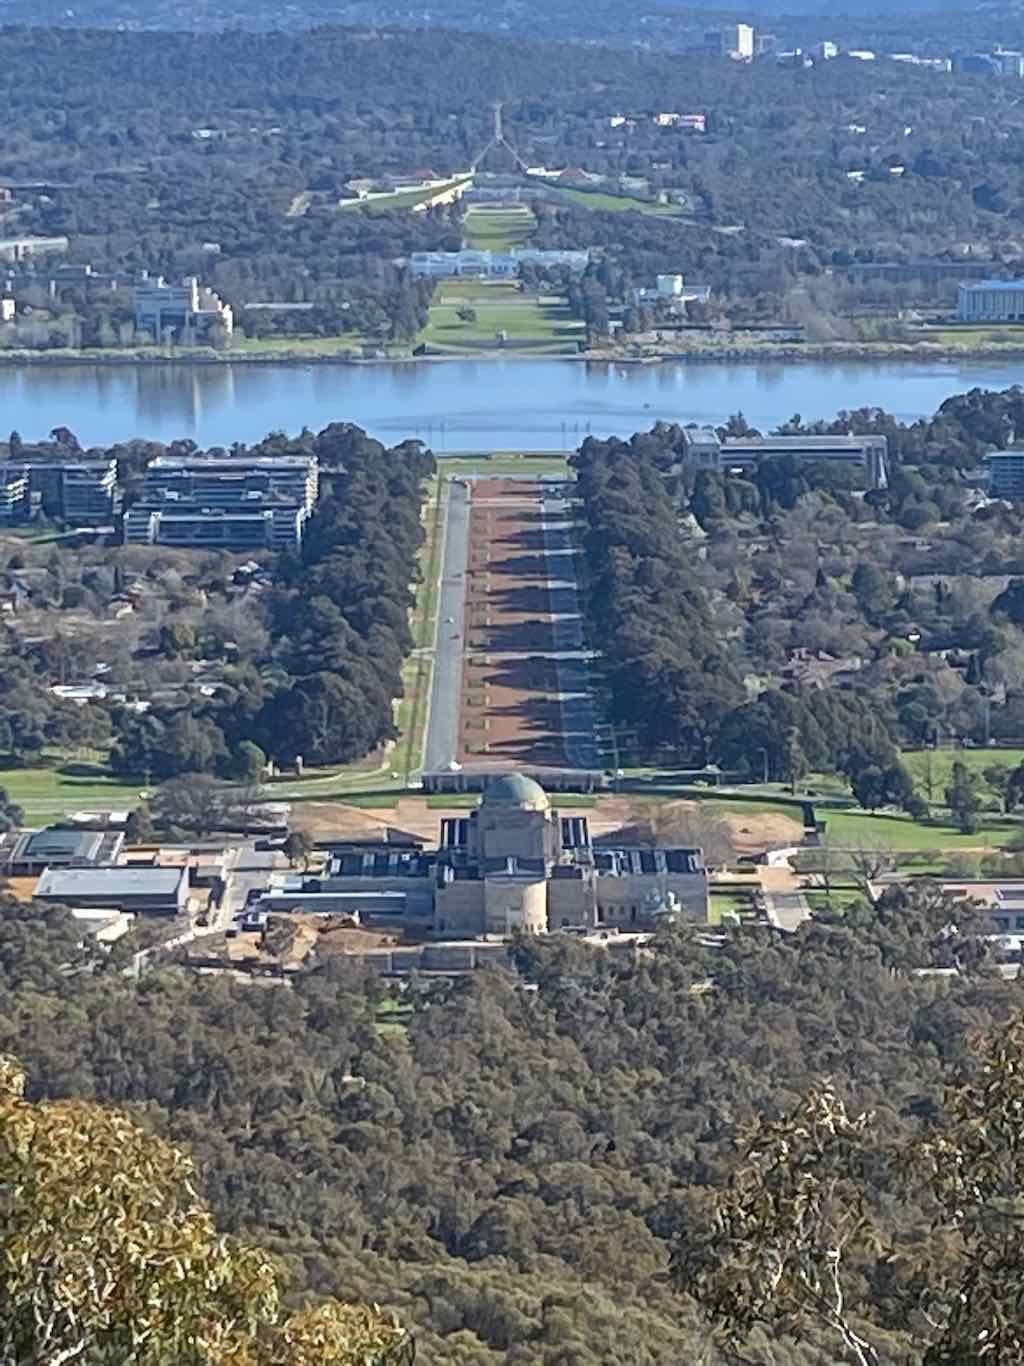 Australian War Memorial - Canberra Image -632d01f72c18e